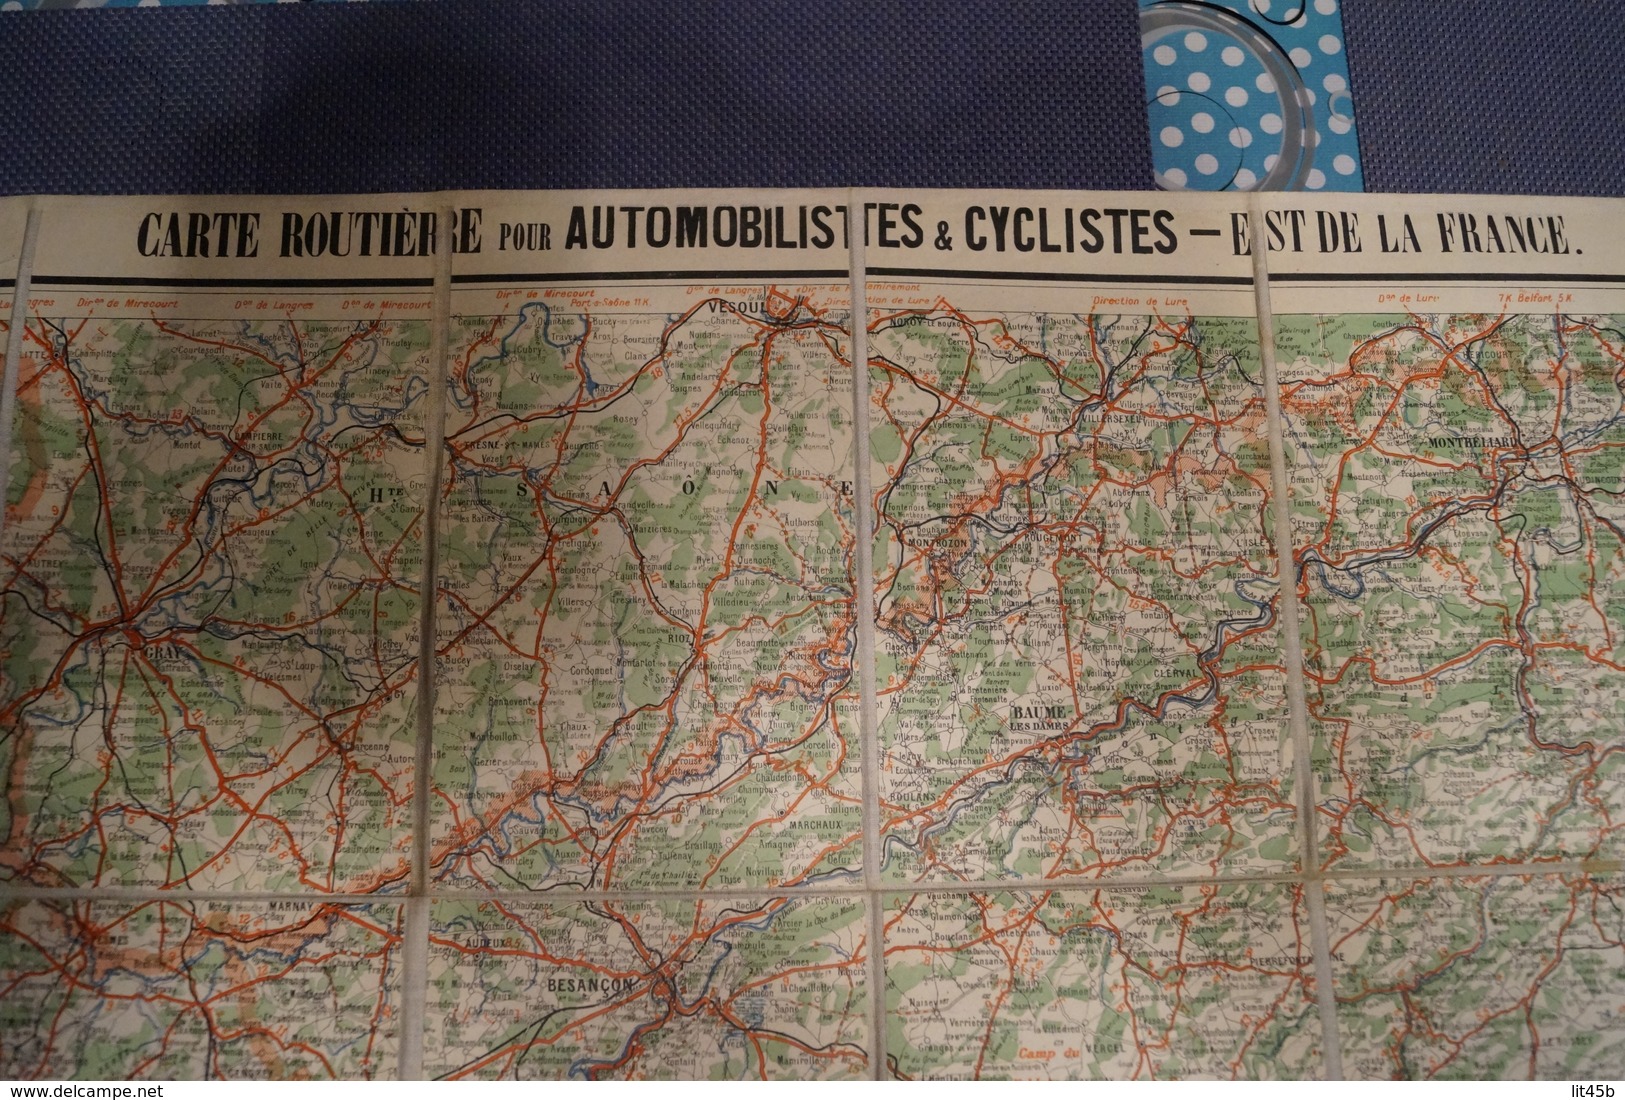 Très belle ancienne carte Taride (sur toile) pour Cycliste et automoblistes,Est de la France,section Sud,N°10,collection